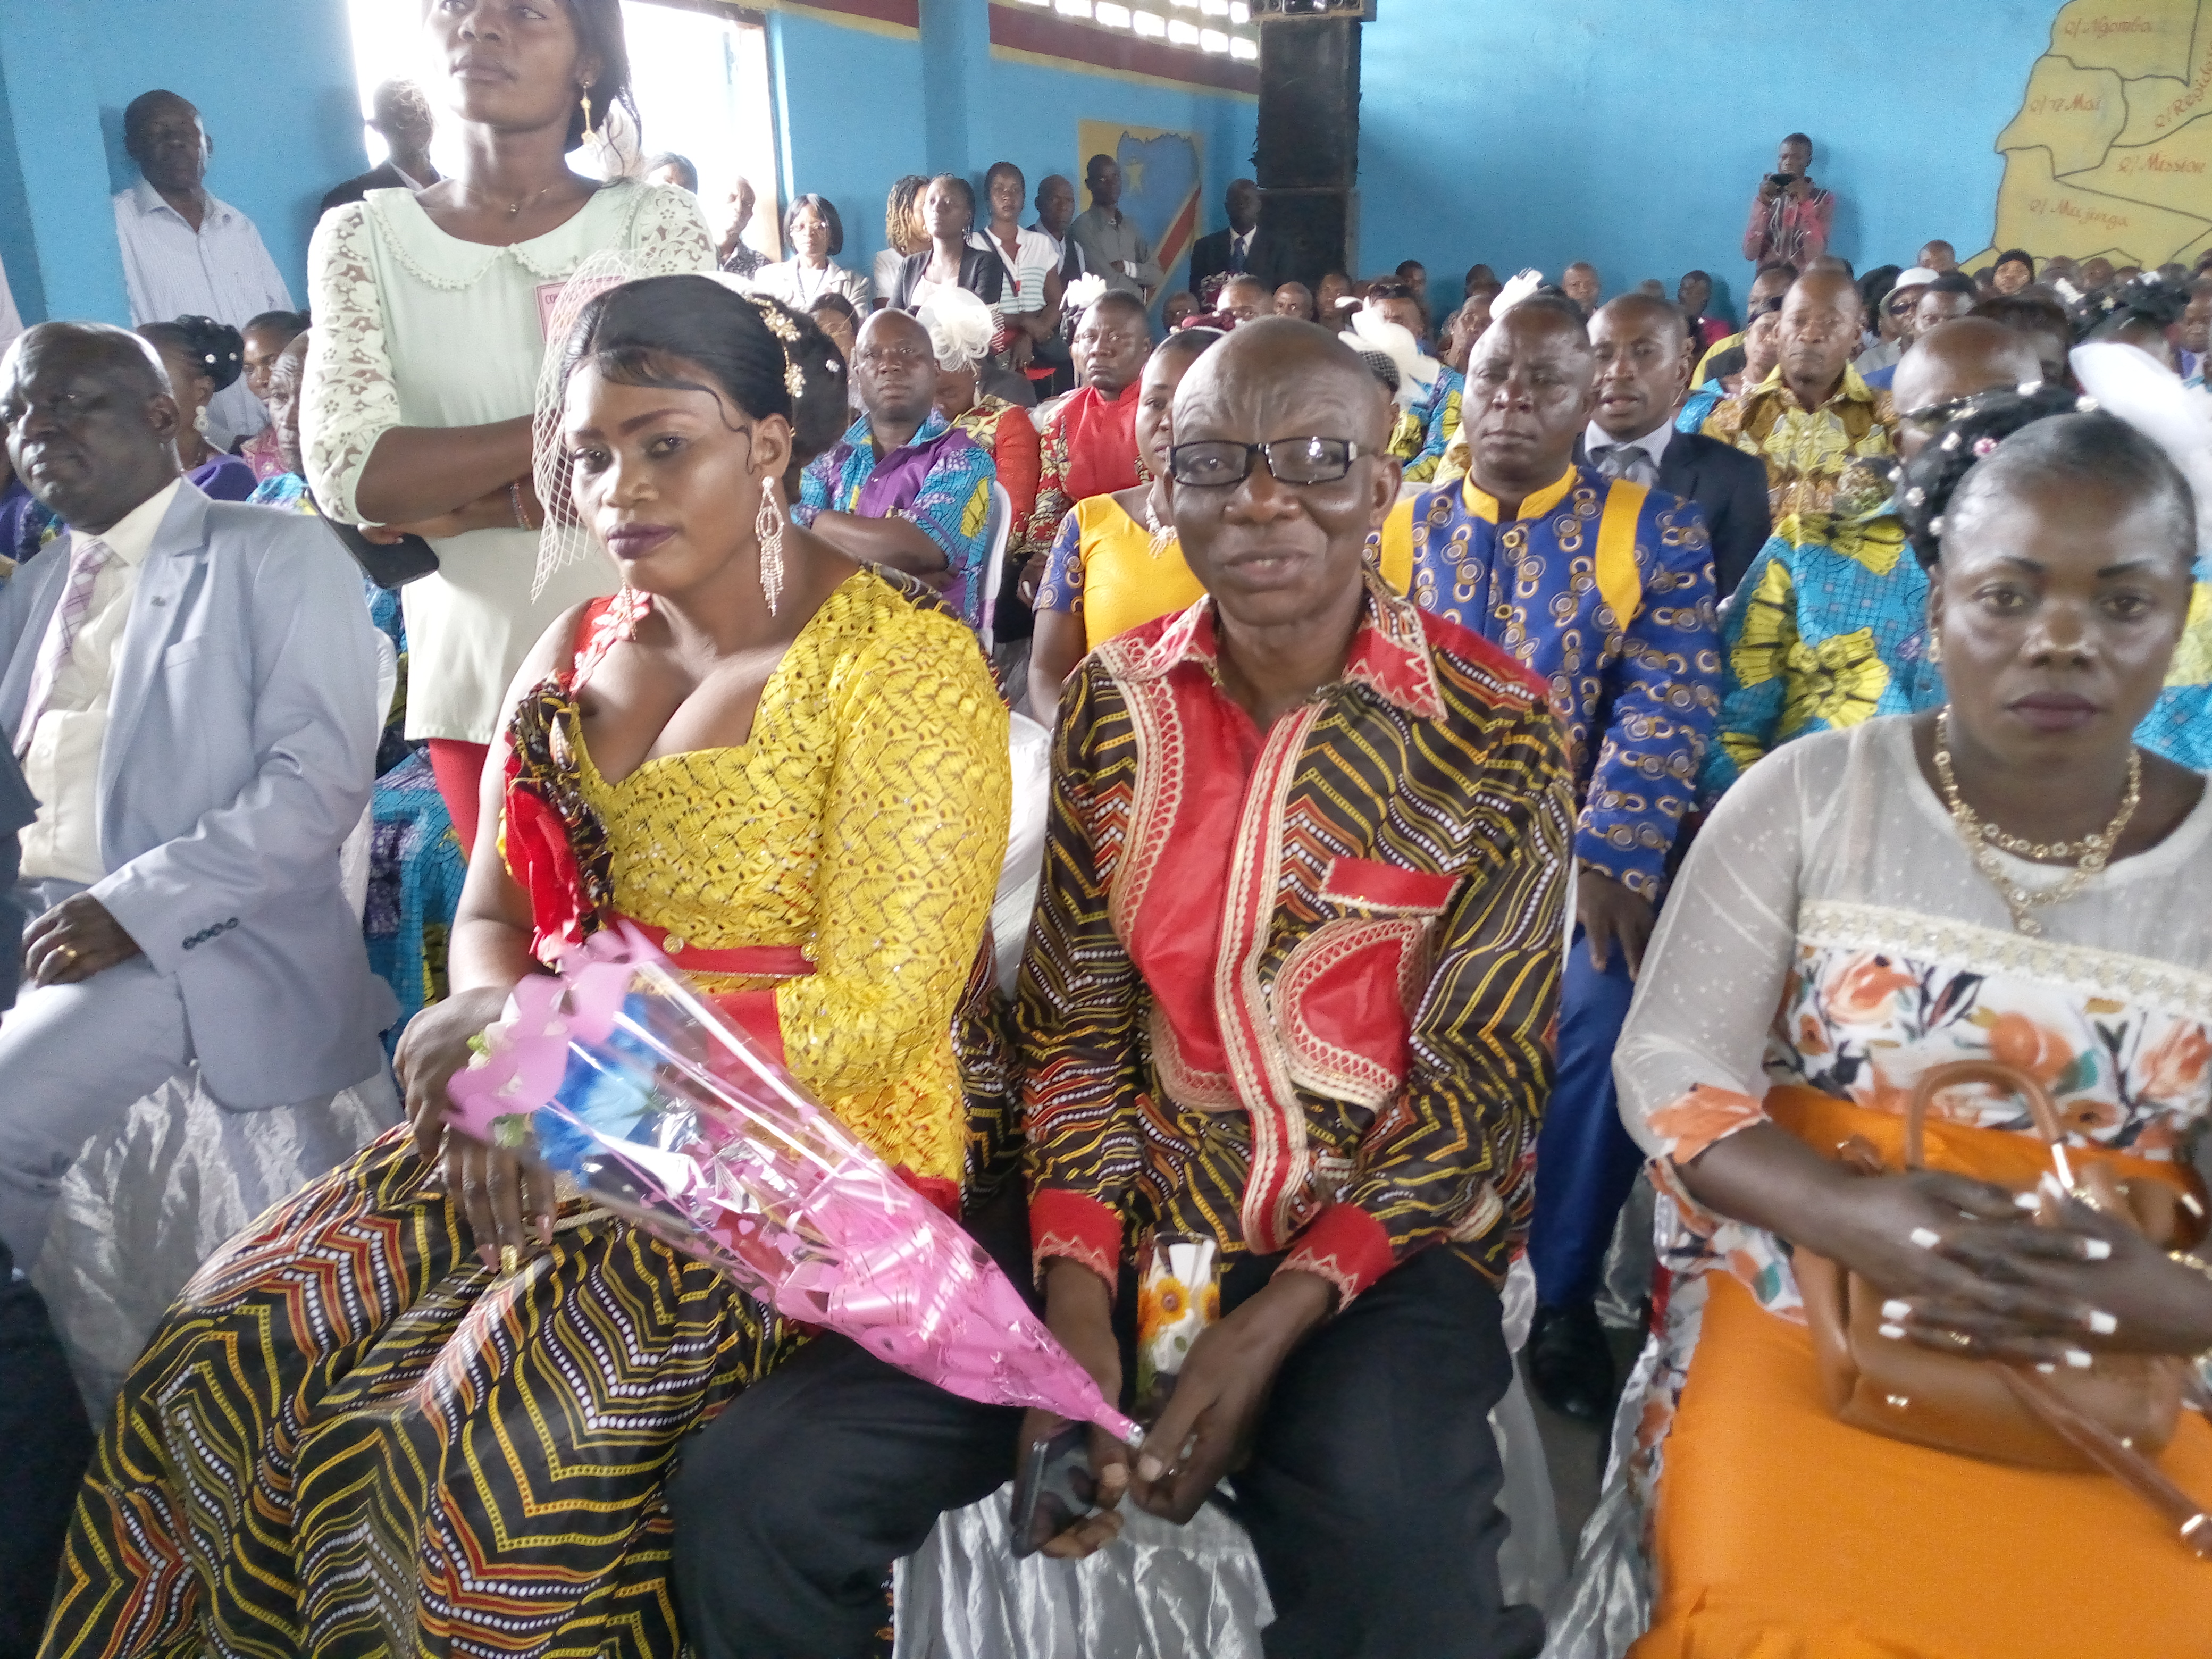 Lire la suite à propos de l’article Sensibilisés sur les VBG et droits successoraux : 50 couples de Kisenso ont célébré leur mariage civil le 20 septembre dernier